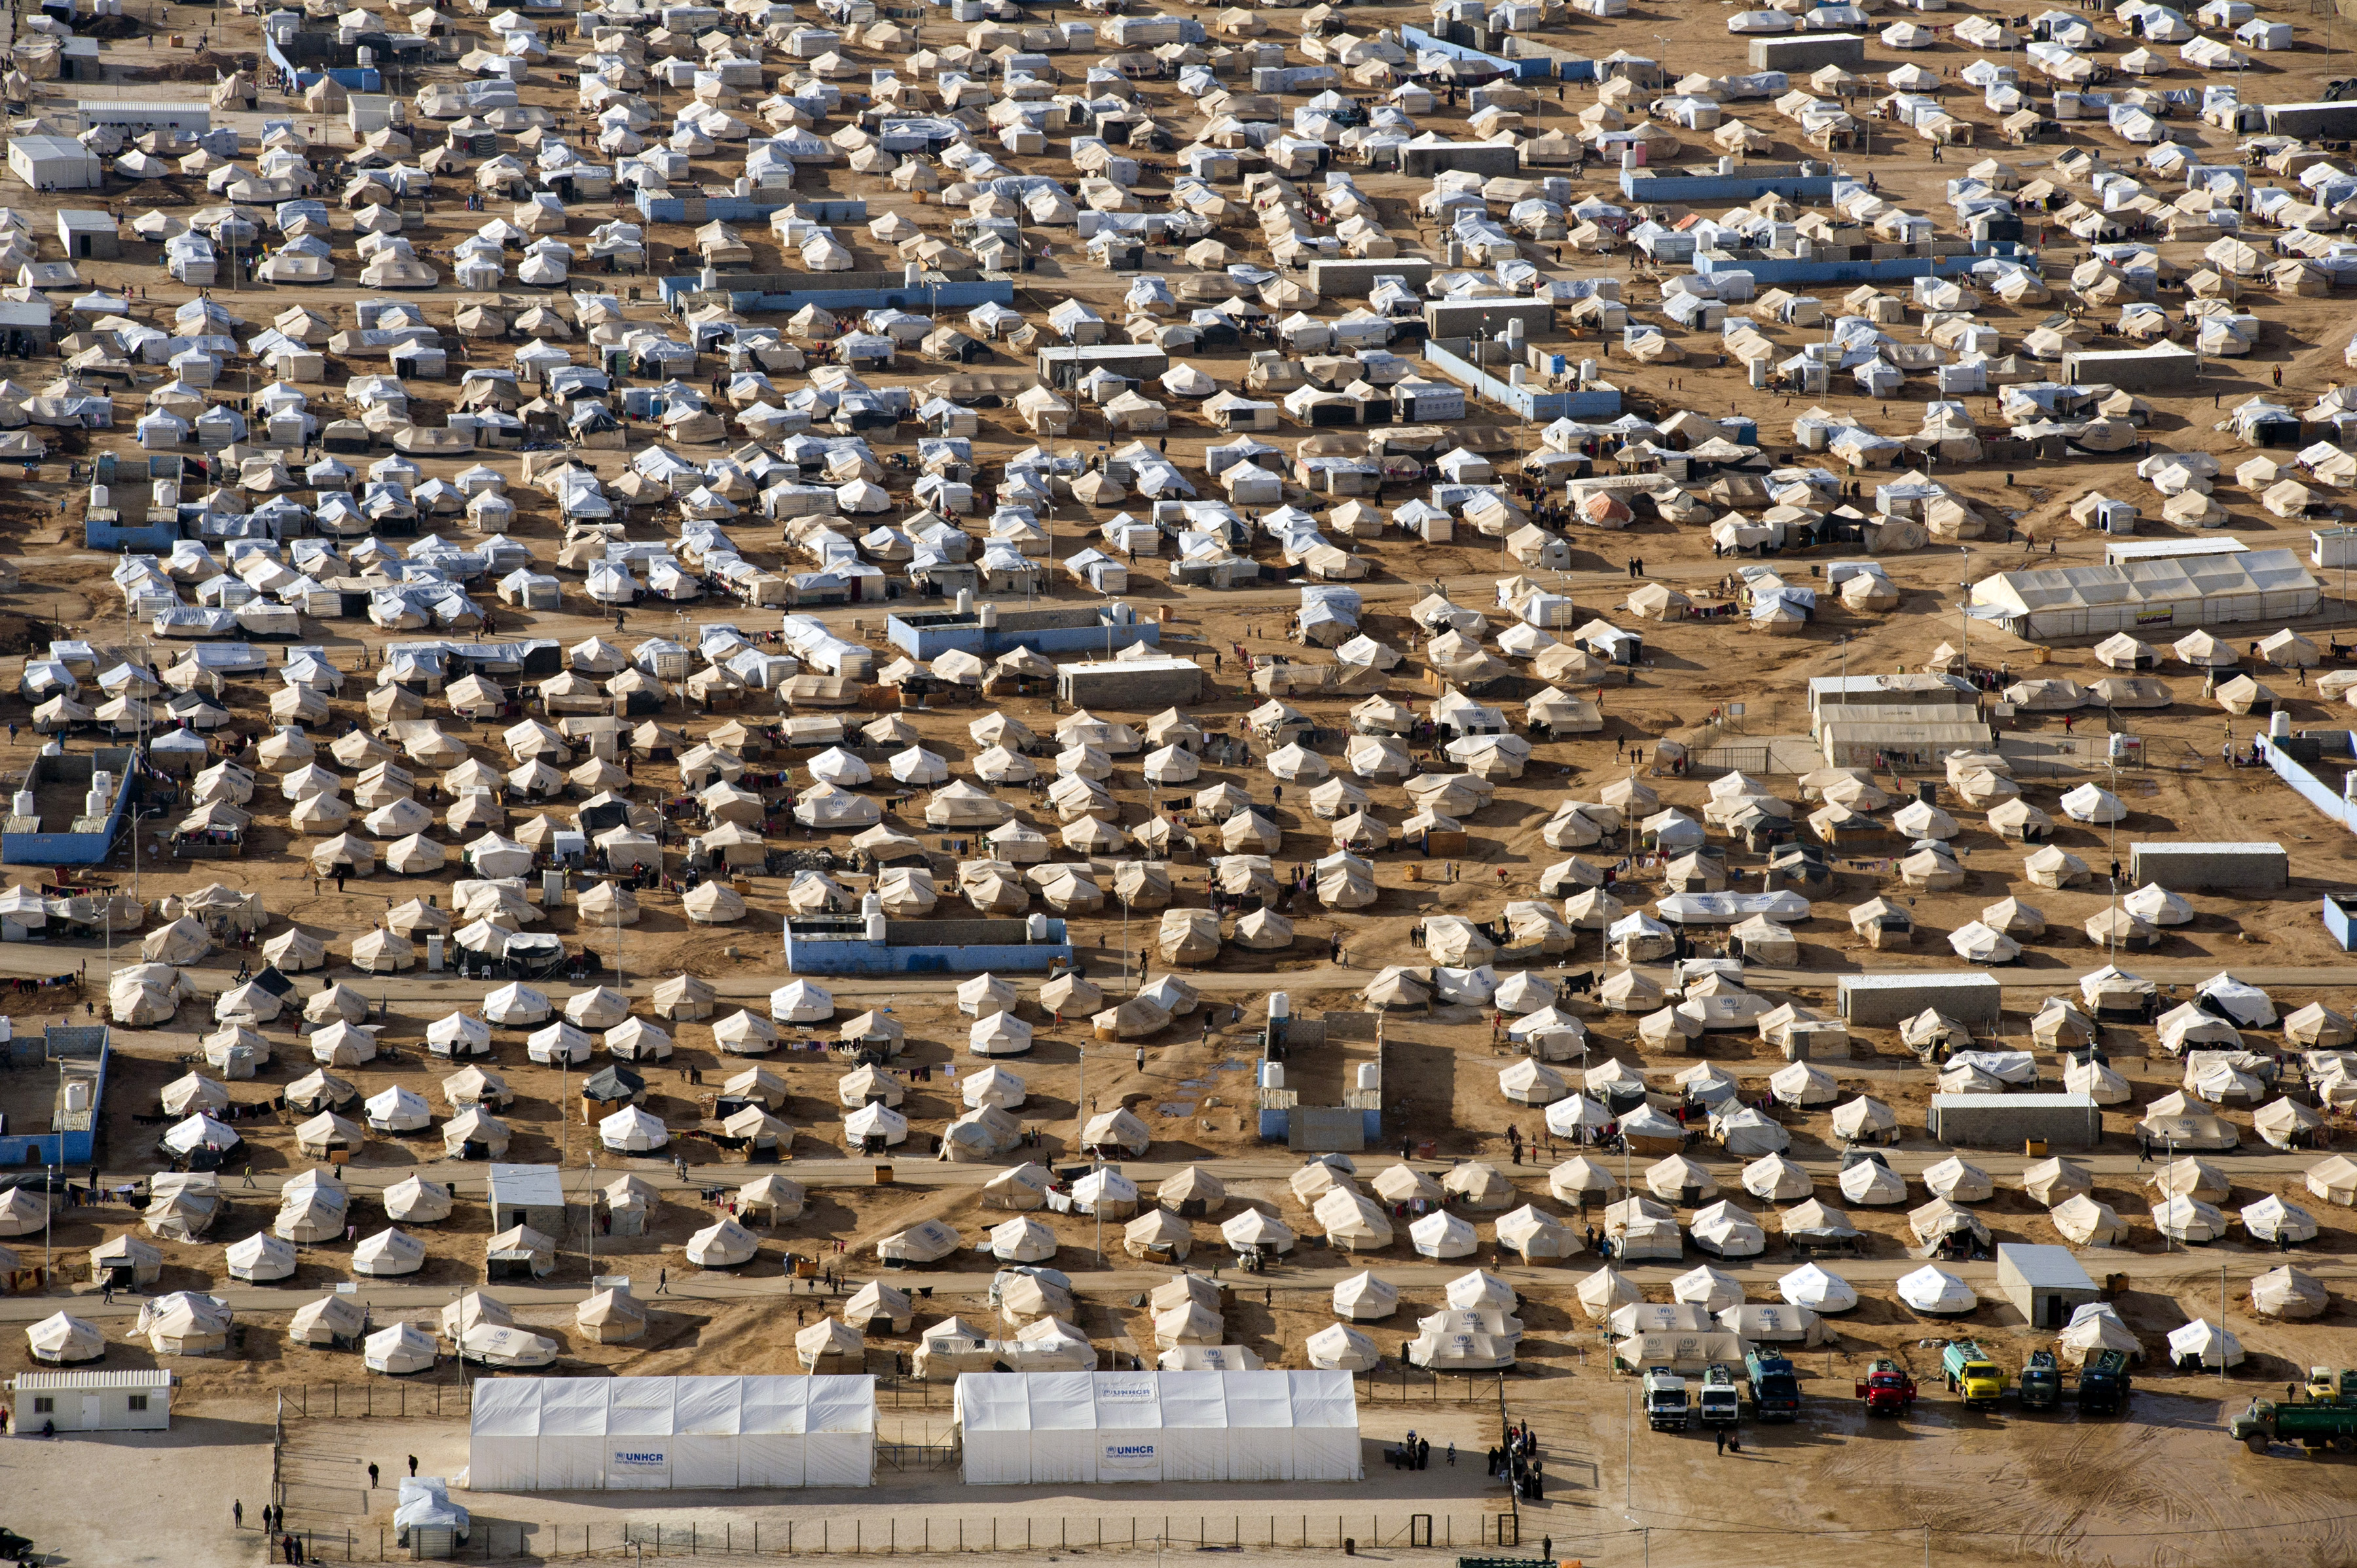 Una vista aérea del campo de refugiados de Za'atri, sede de decenas de miles de sirios desplazados por el conflicto, cerca de Mafraq, Jordania.